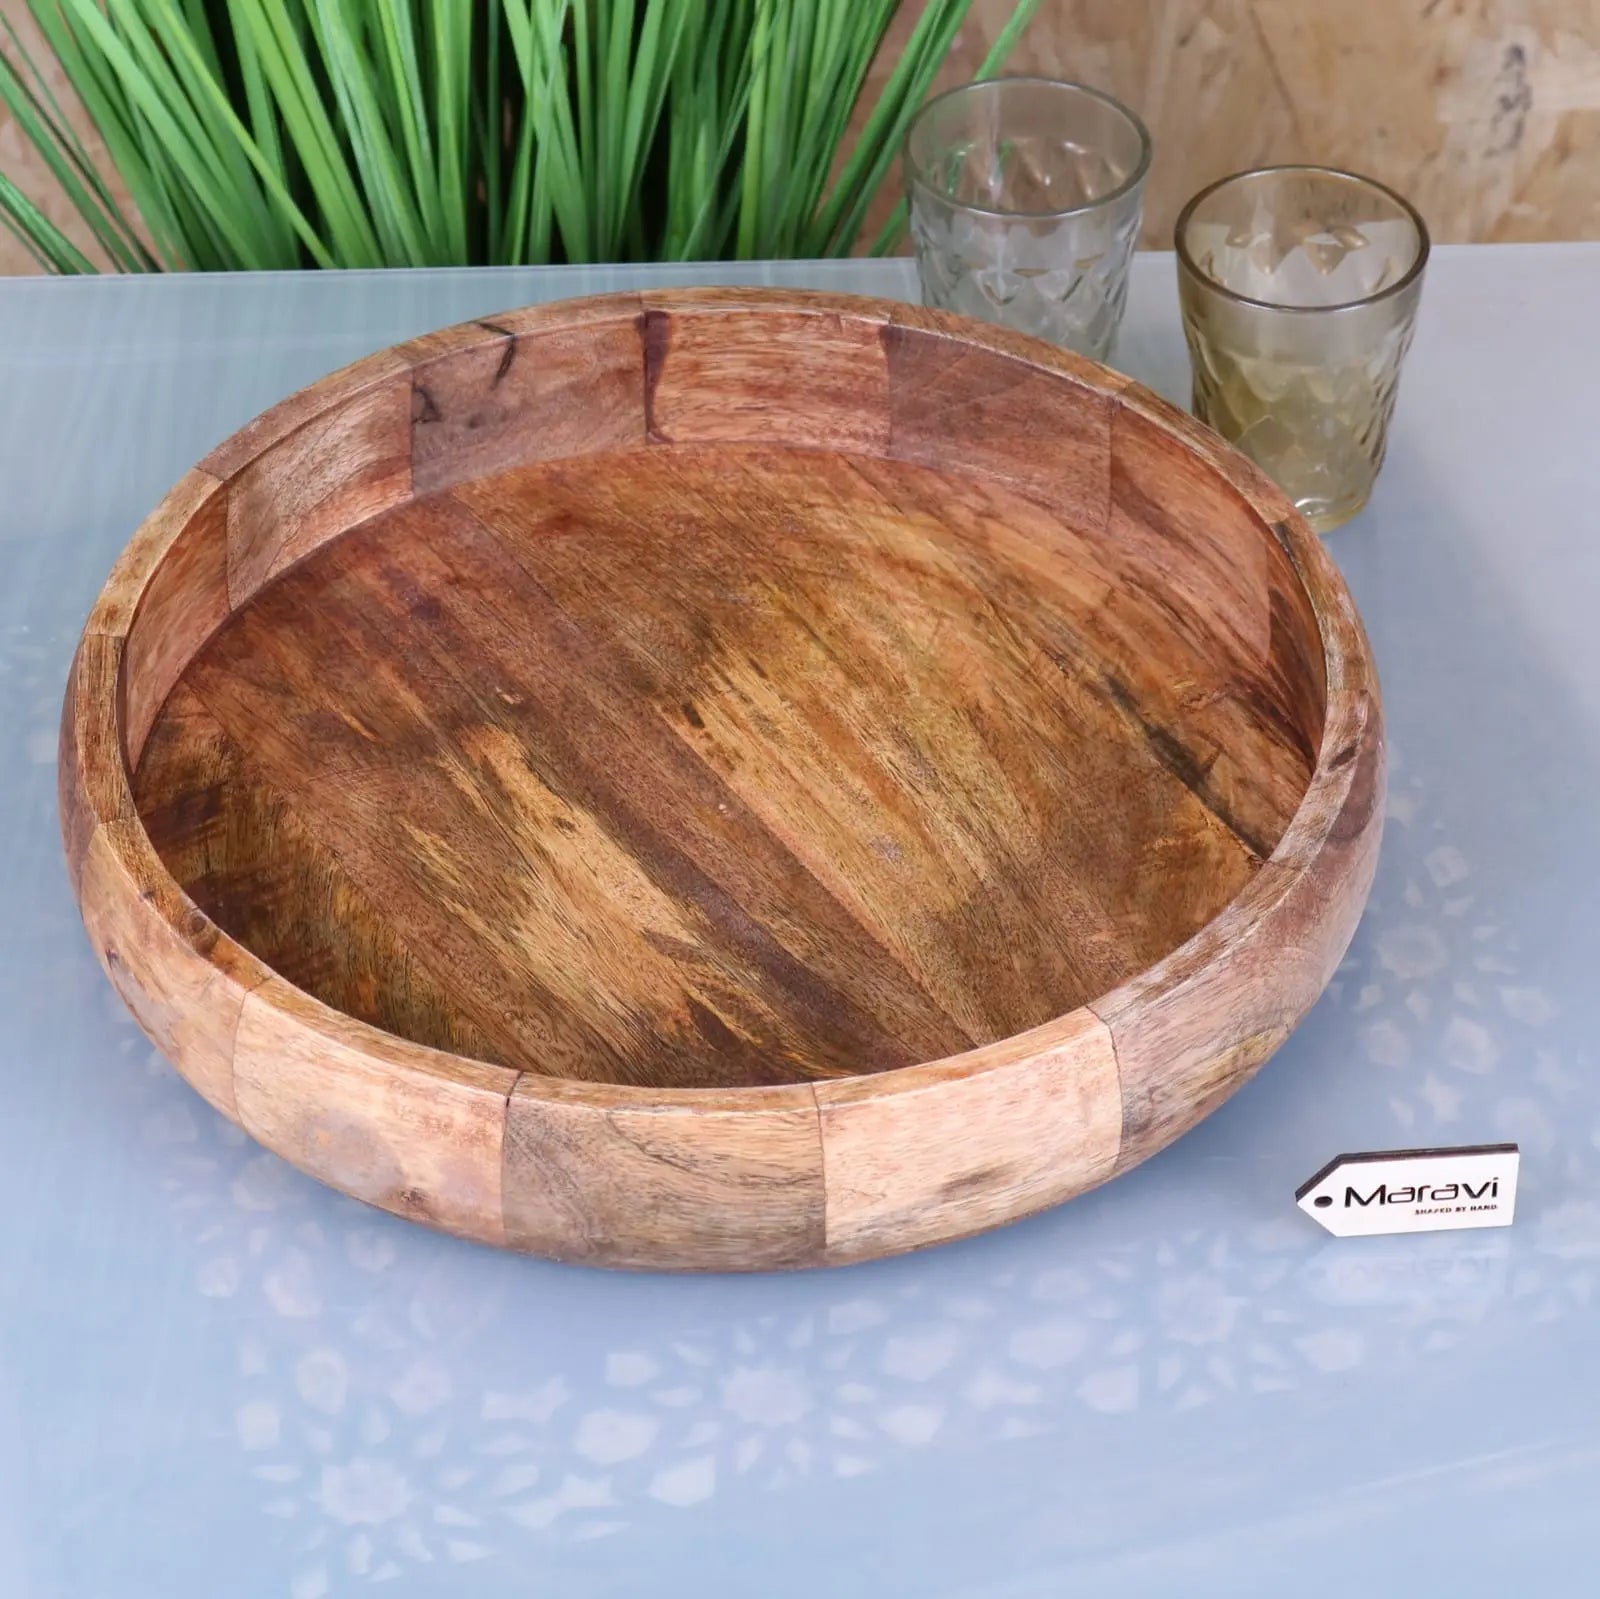 Segti Wooden Fruit Wood Bowl Tray - Main Image